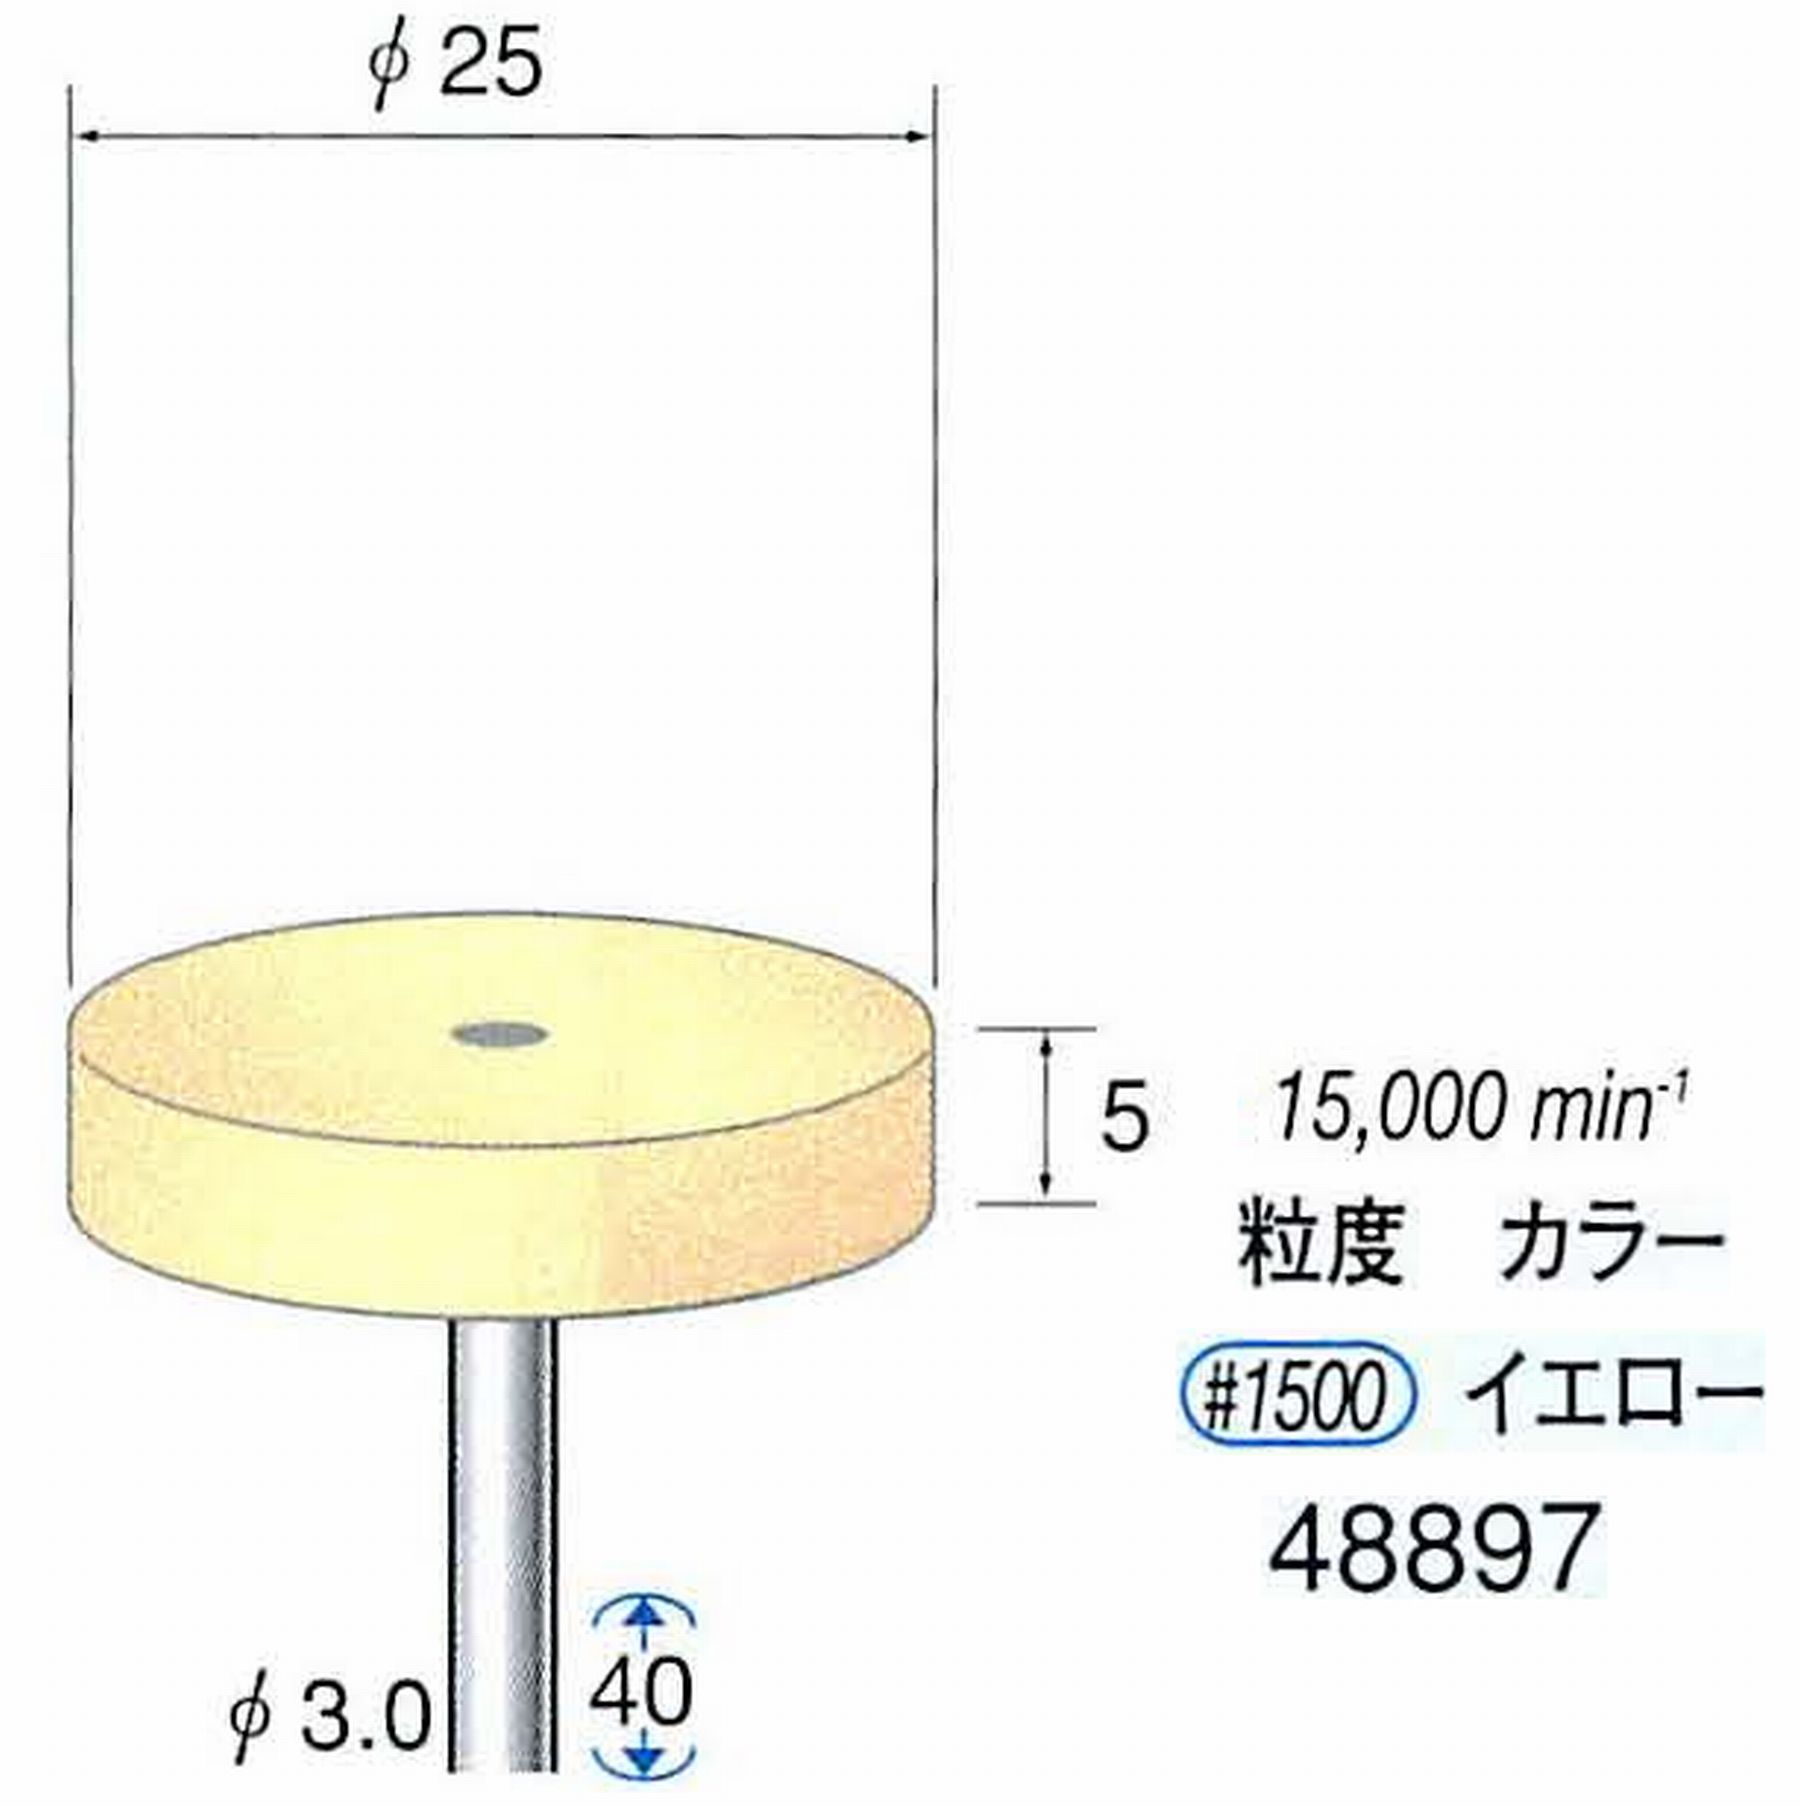 ナカニシ/NAKANISHI ポリッシュサンダー 軸径(シャンク)φ3.0mm 48897